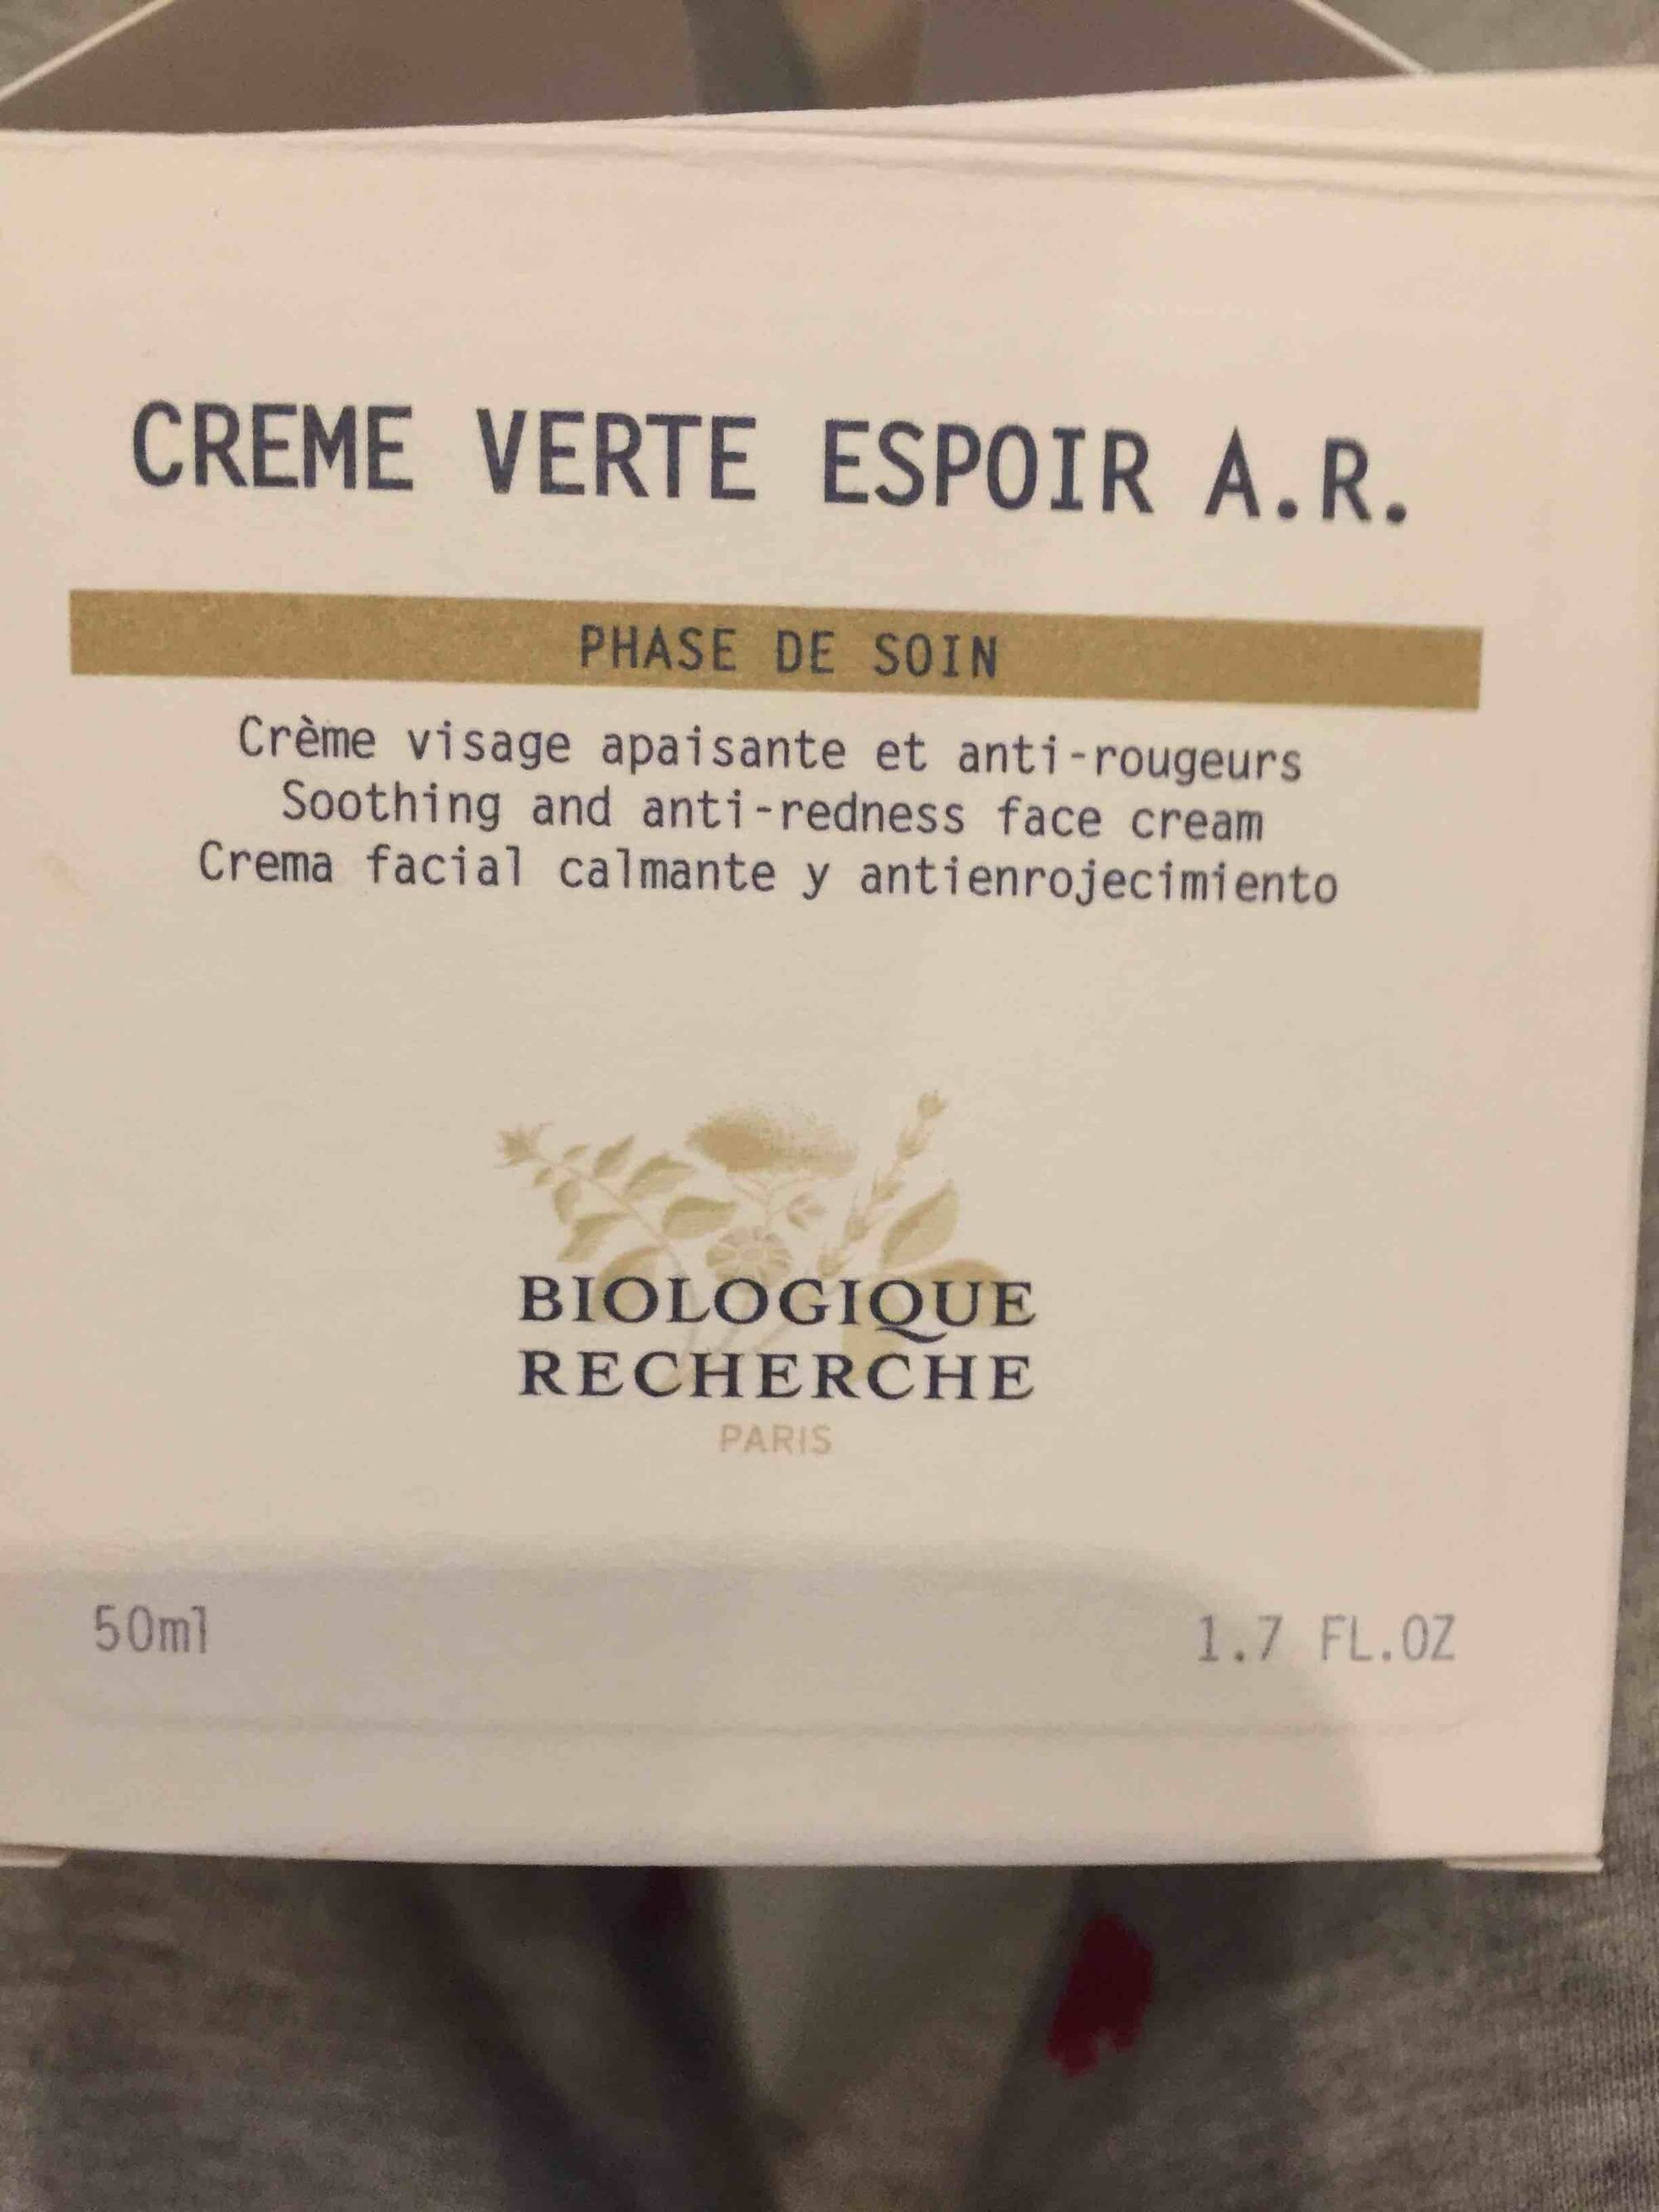 BIOLOGIQUE RECHERCHE - Crème verte espoir A.R.